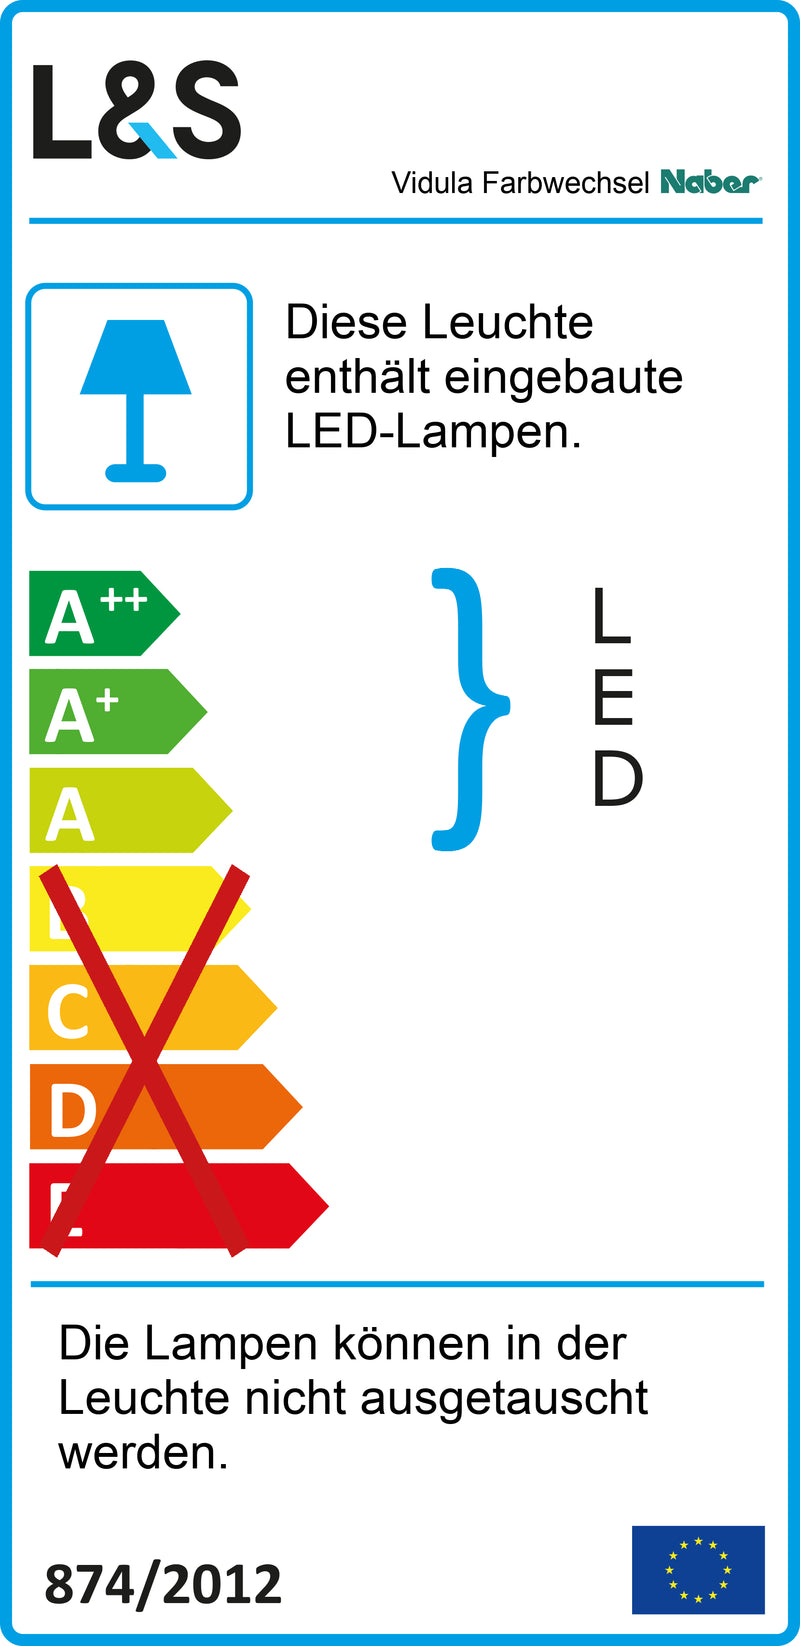 E-Label zu Zeichnung zu Vidula Farbwechsel LED als Variante L 900 mm, schwarz matt von Naber GmbH in der Kategorie Lichttechnik in Österreich auf conceptshop.at